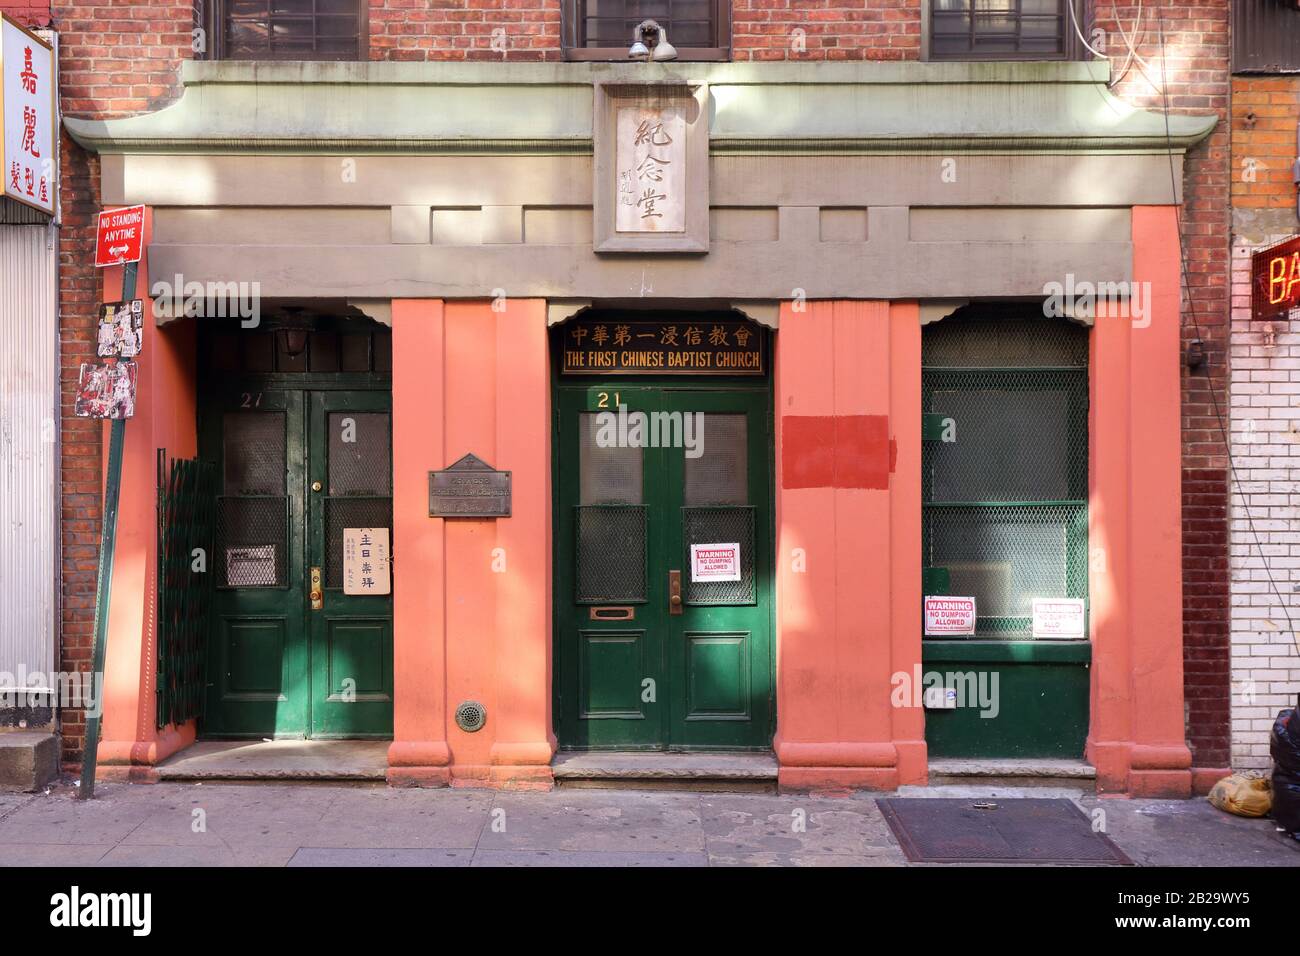 Prima chiesa Battista cinese, 21 Pell St, New York, NYC storefront foto di un sito storico associato con suffragista cinese Dr. Mabel Ping Hua Lee. Foto Stock